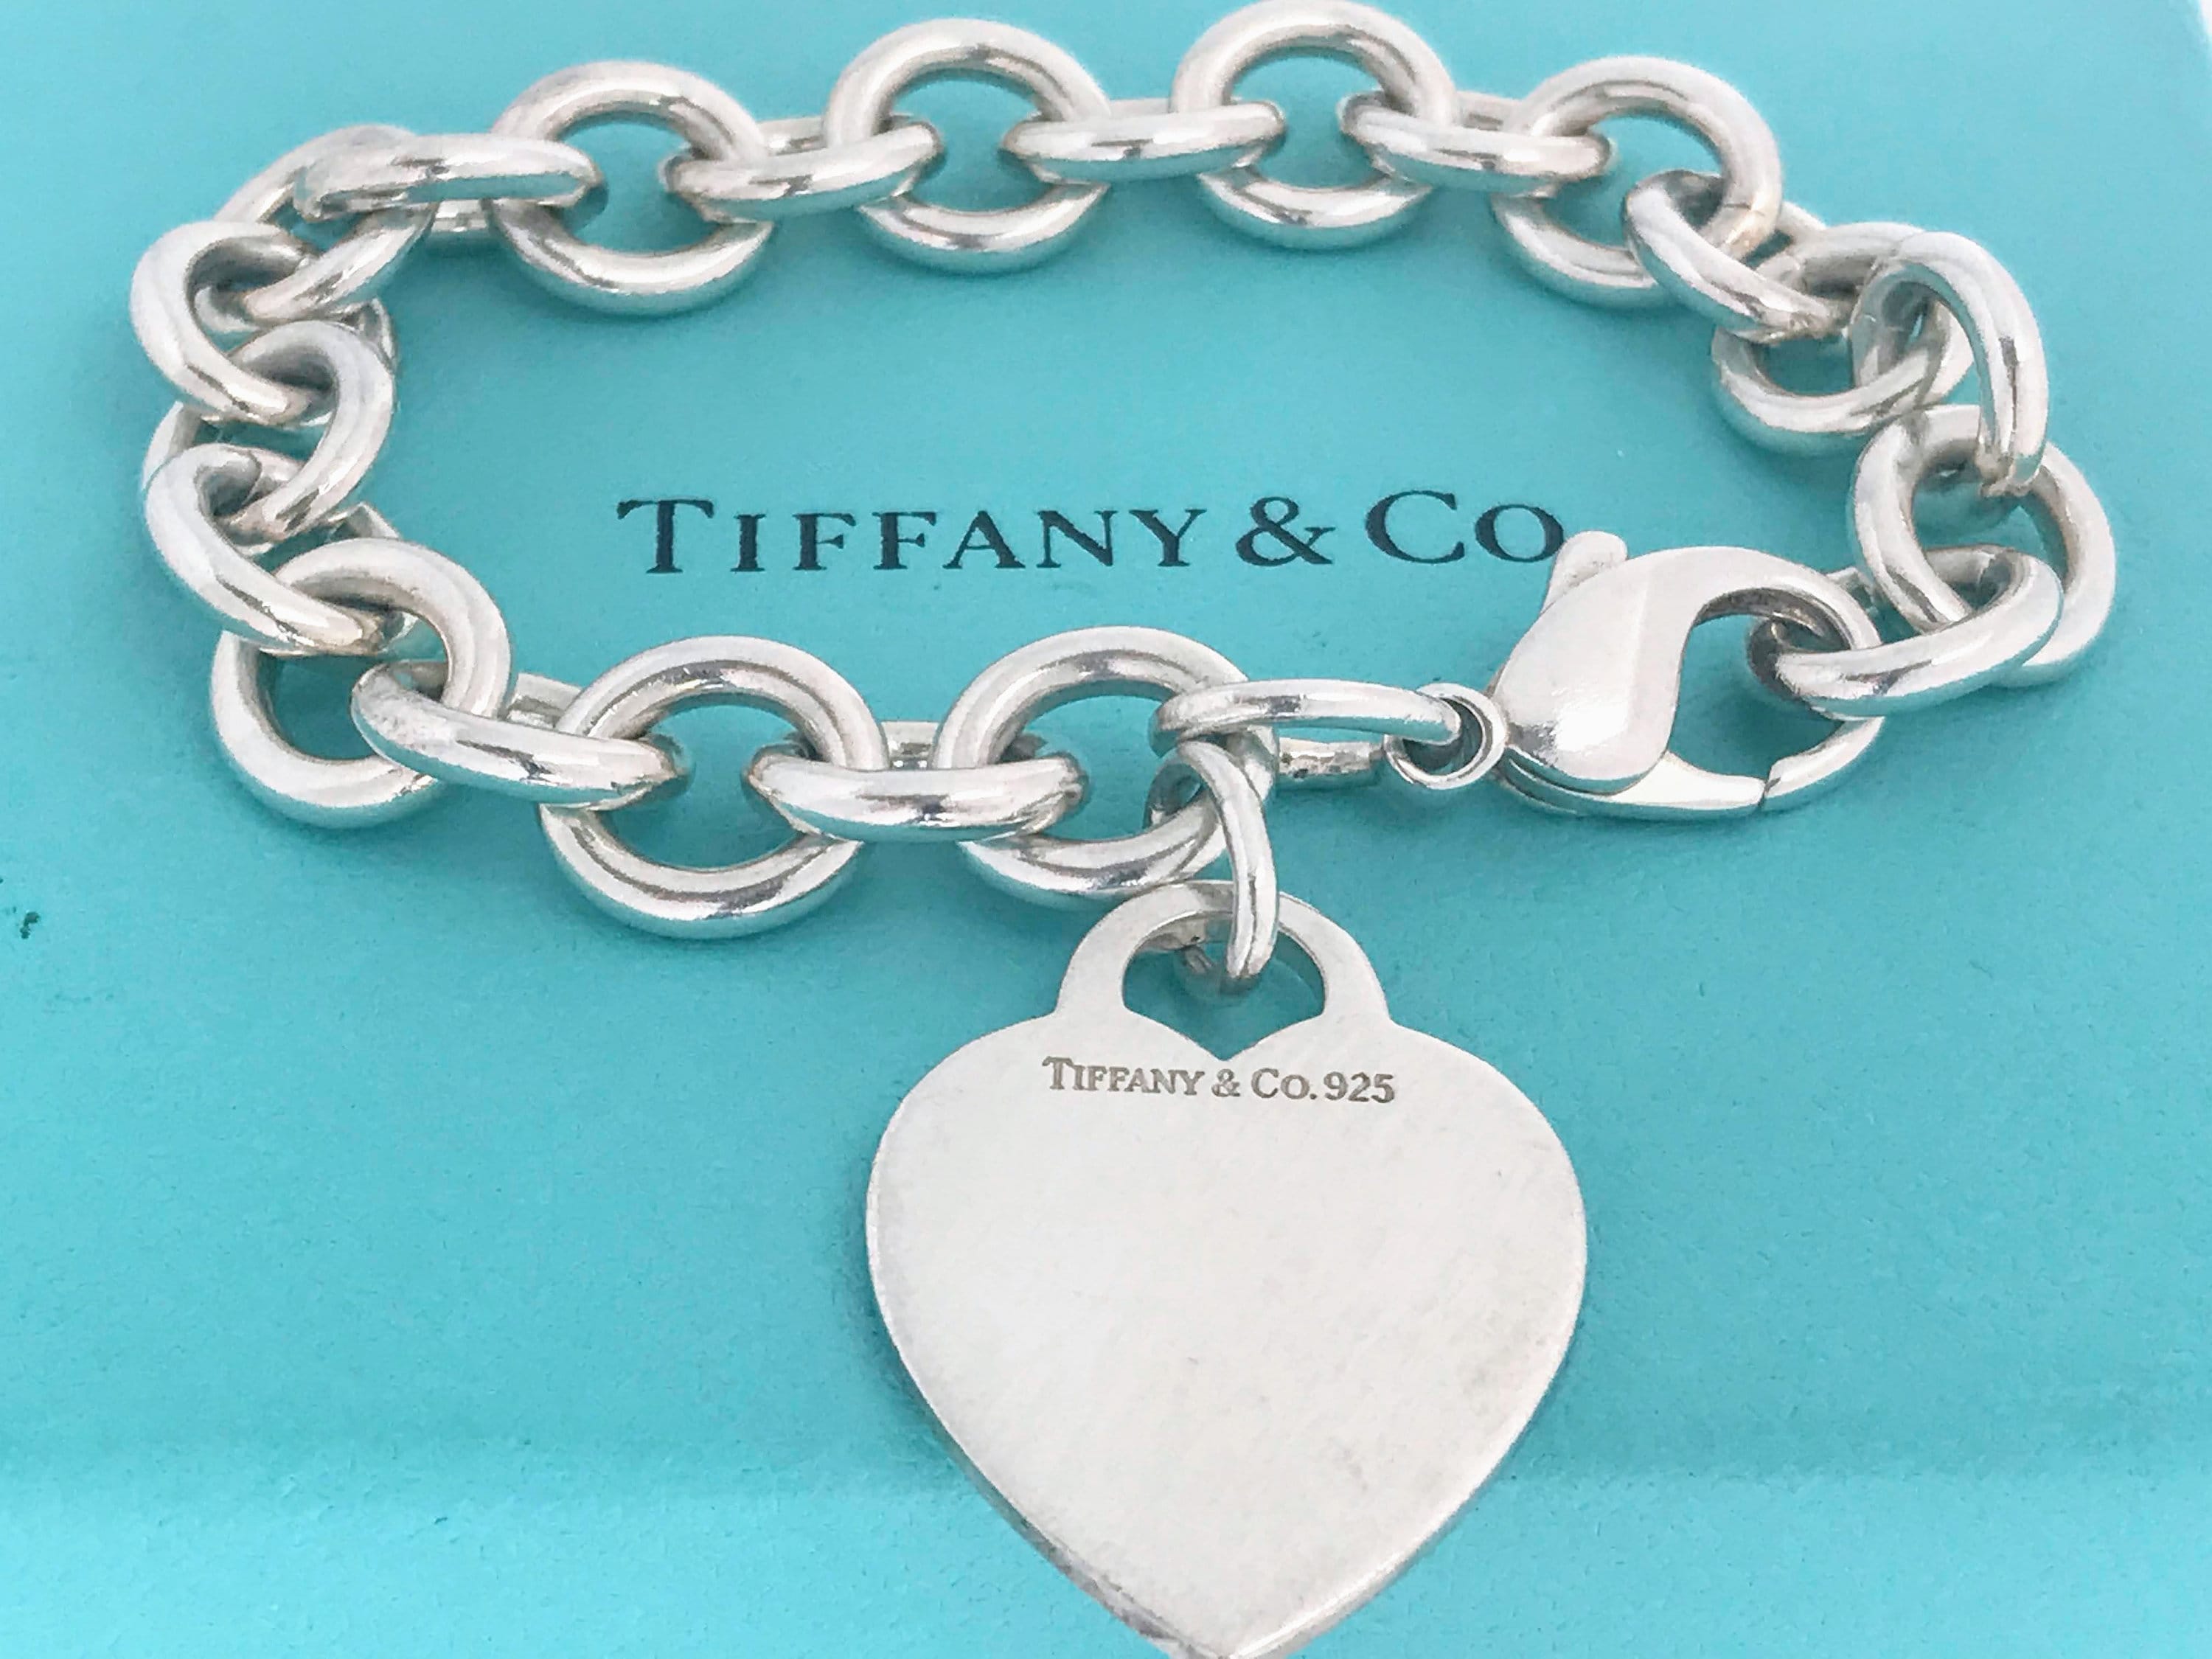 Tiffany & Co. Heart Bracelet in Sterling Silver & 18k Yellow Gold 2000 |  eBay